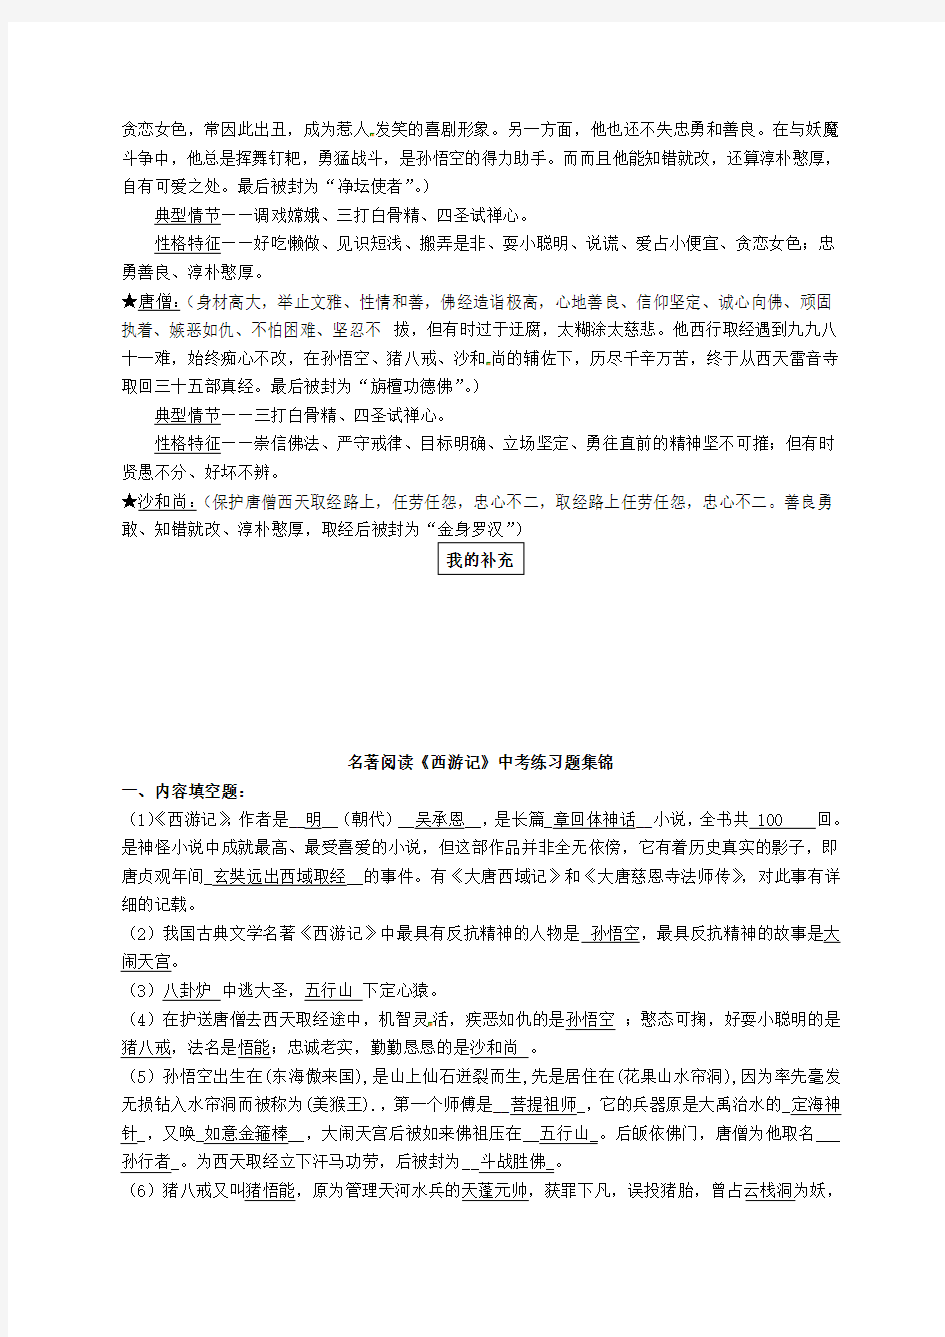 苏教版初中语文七年级下册第4单元名著阅读西游记知识点